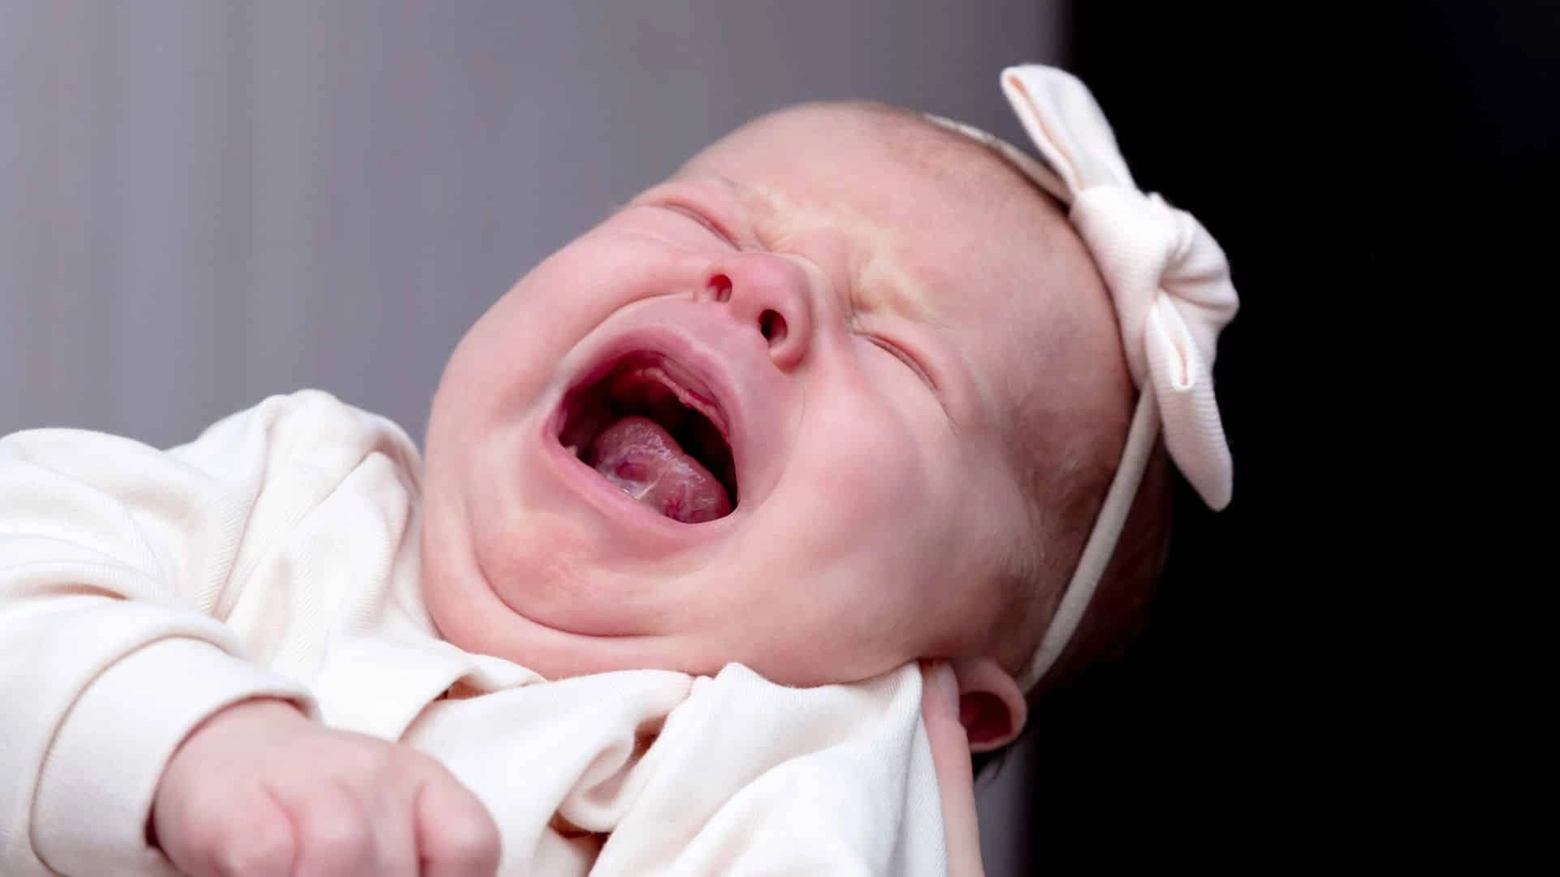 La sindrome del bambino scosso è una delle più gravi forme di maltrattamento del bambino, in particolare del neonato